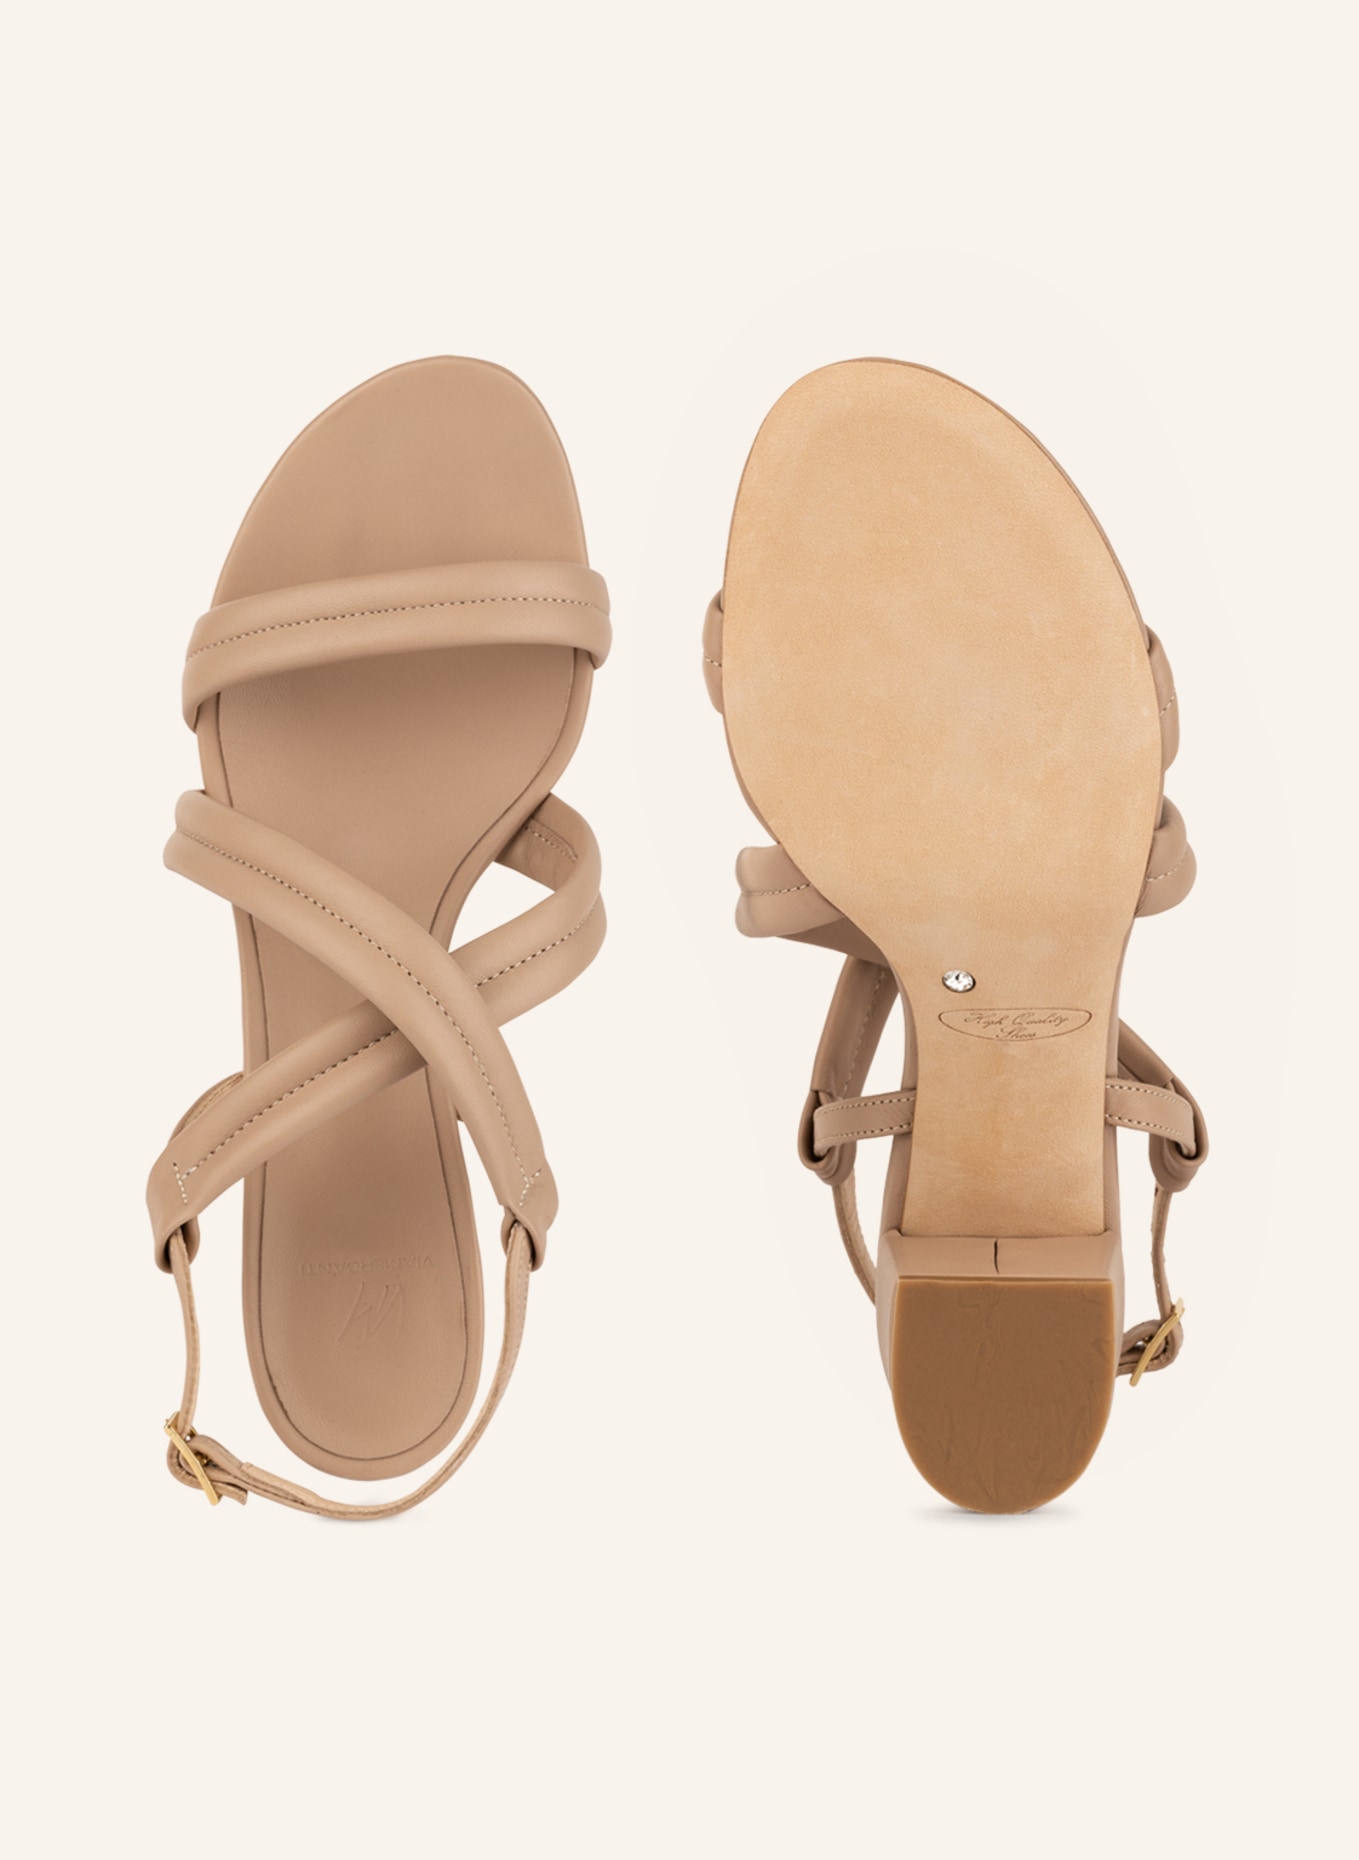 VIAMERCANTI Sandals ACCIAROLI, Color: BEIGE (Image 5)